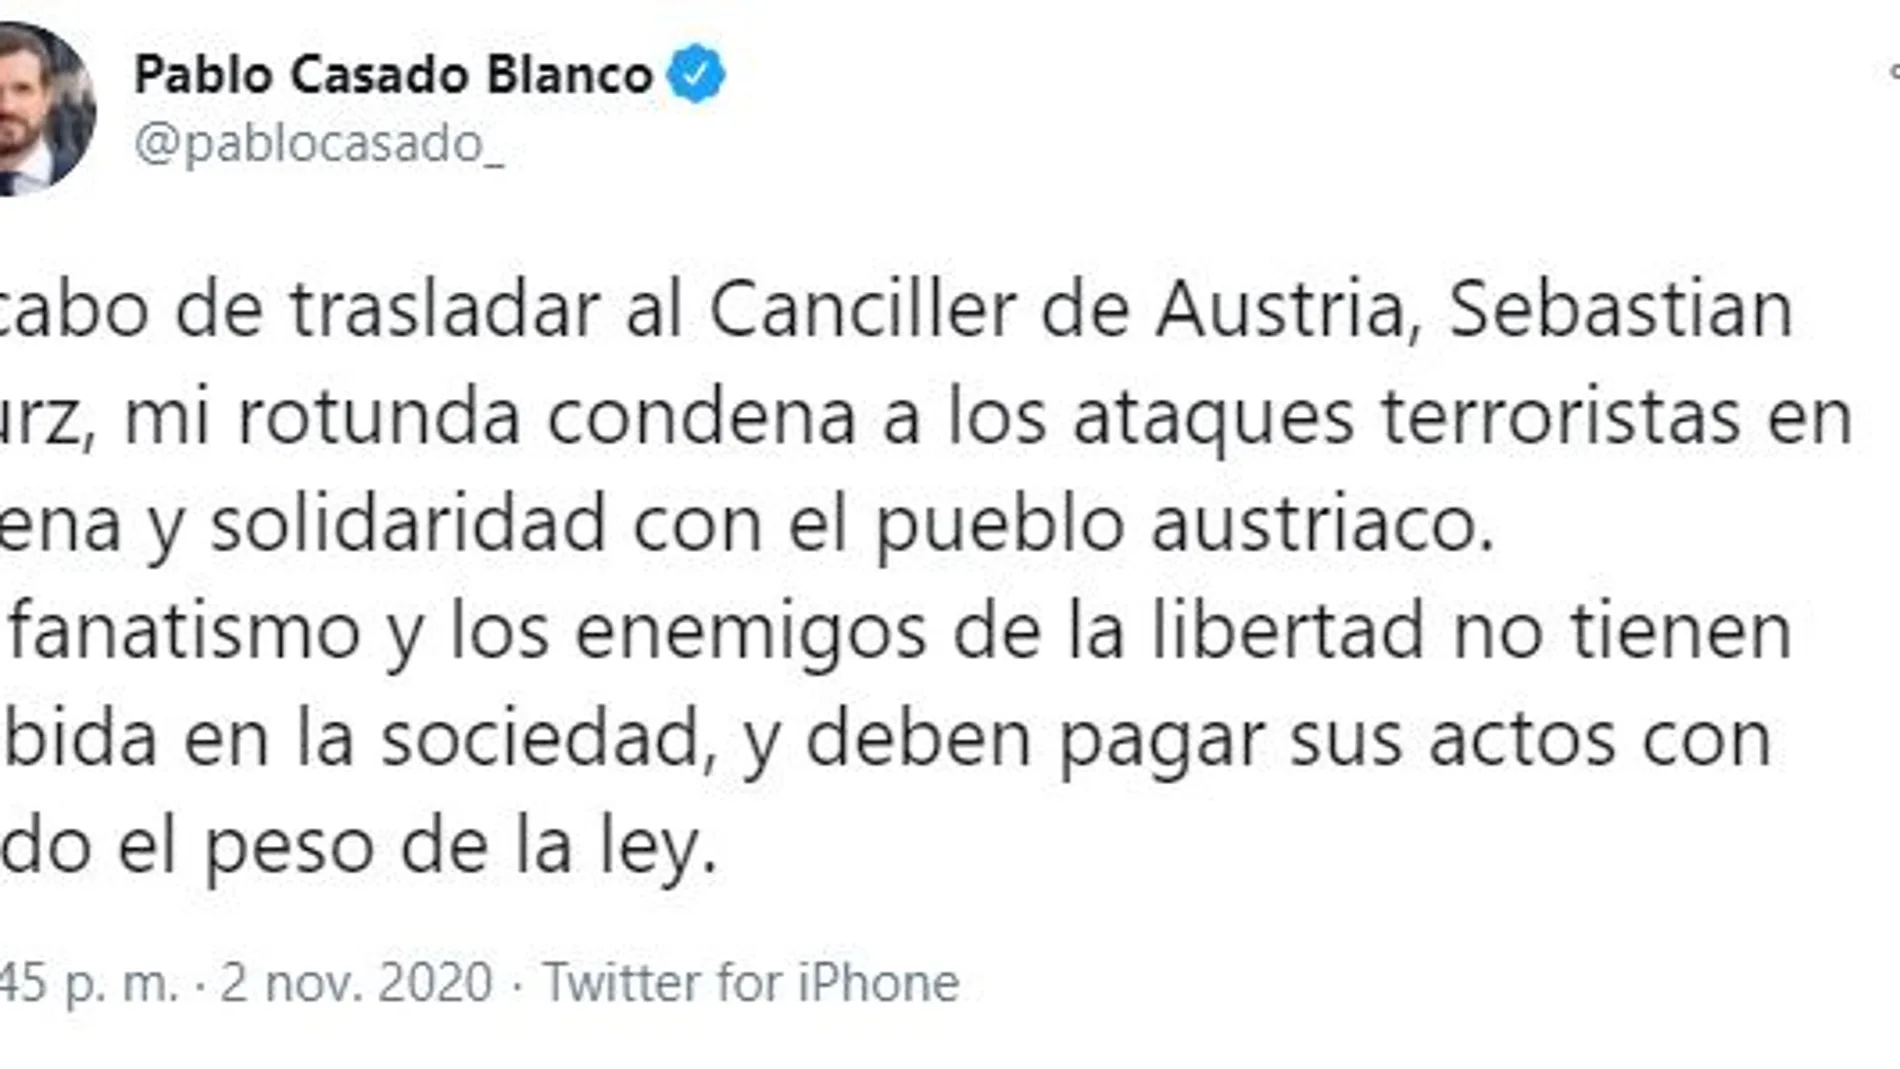 Tweet del líder del PP condenando los atentados